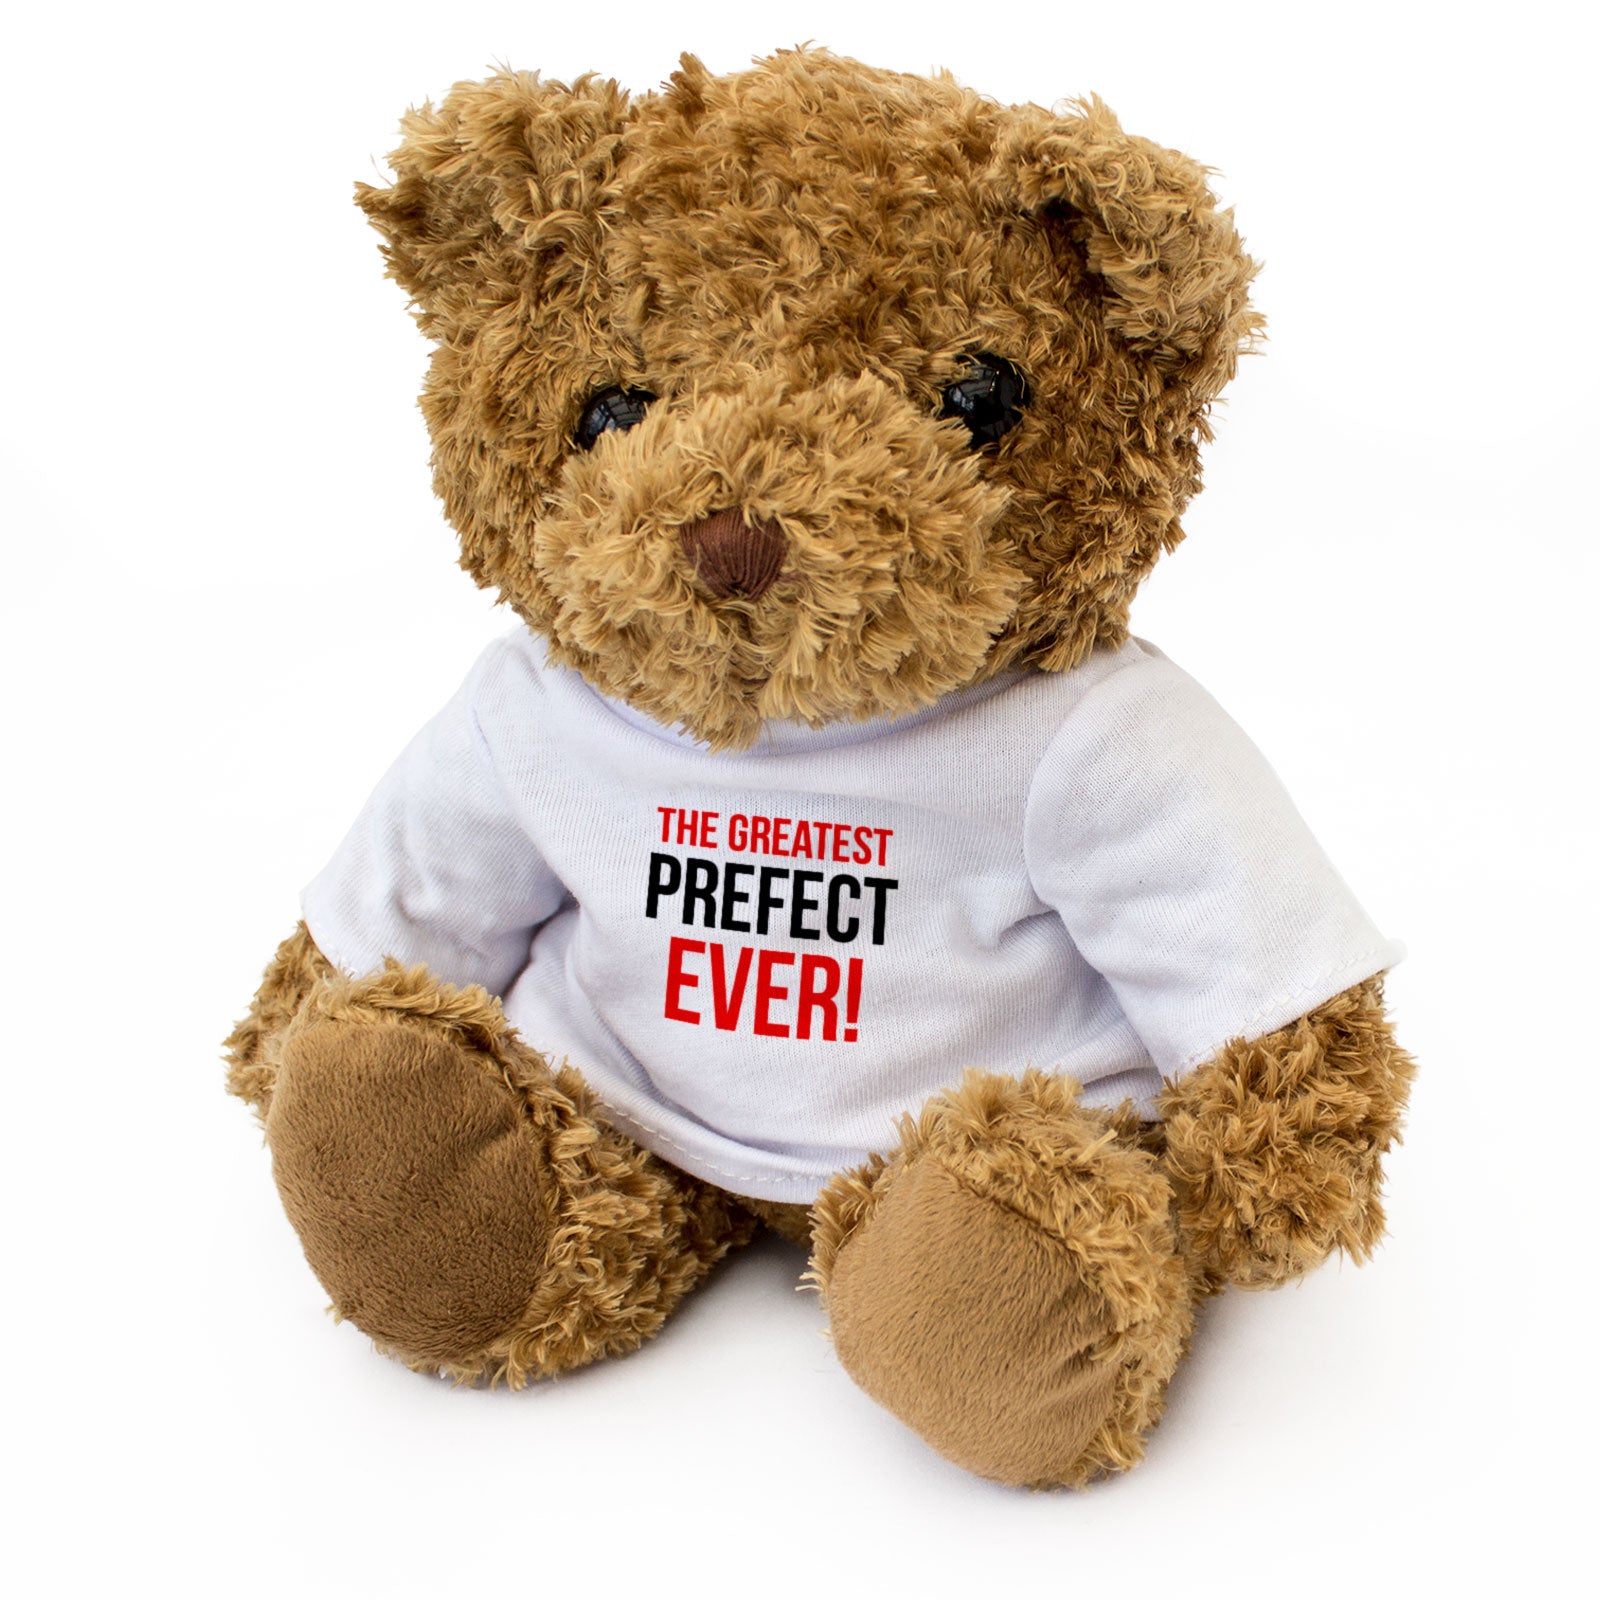 The Greatest Prefect Ever - Teddy Bear